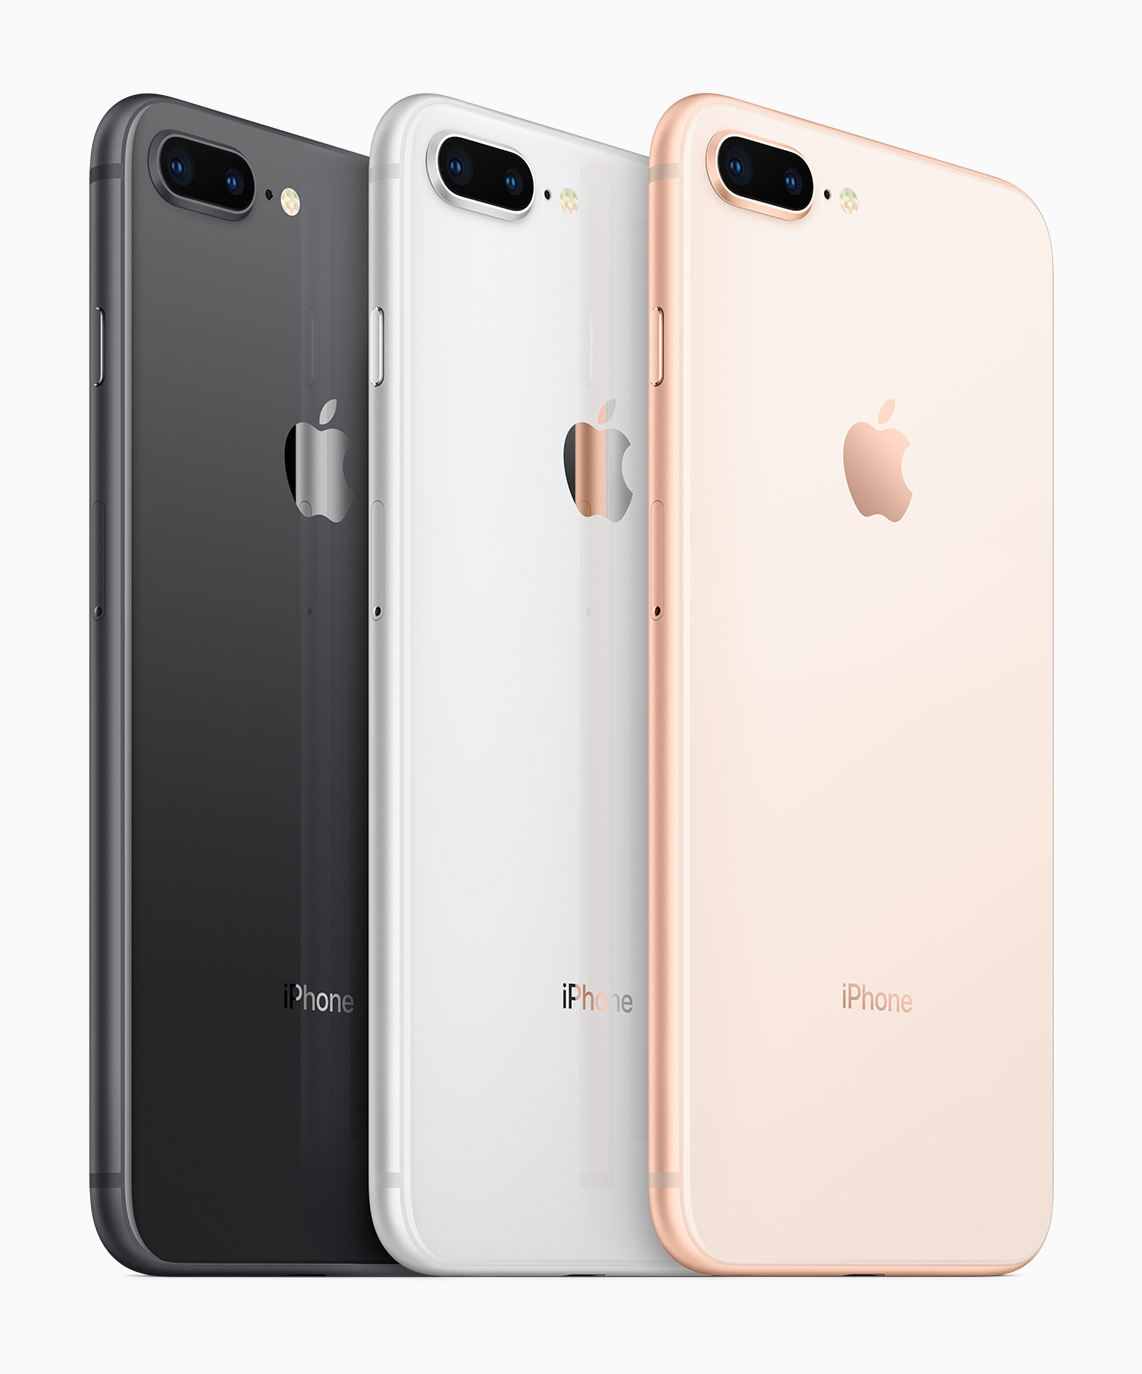 Immagine pubblicata in relazione al seguente contenuto: <b>Apple lancia gli iPhone di nuova generazione iPhone 8 e iPhone 8 Plus</b> | Nome immagine: news27023_iPhone-7-iPhone-7-Plus_3.jpg